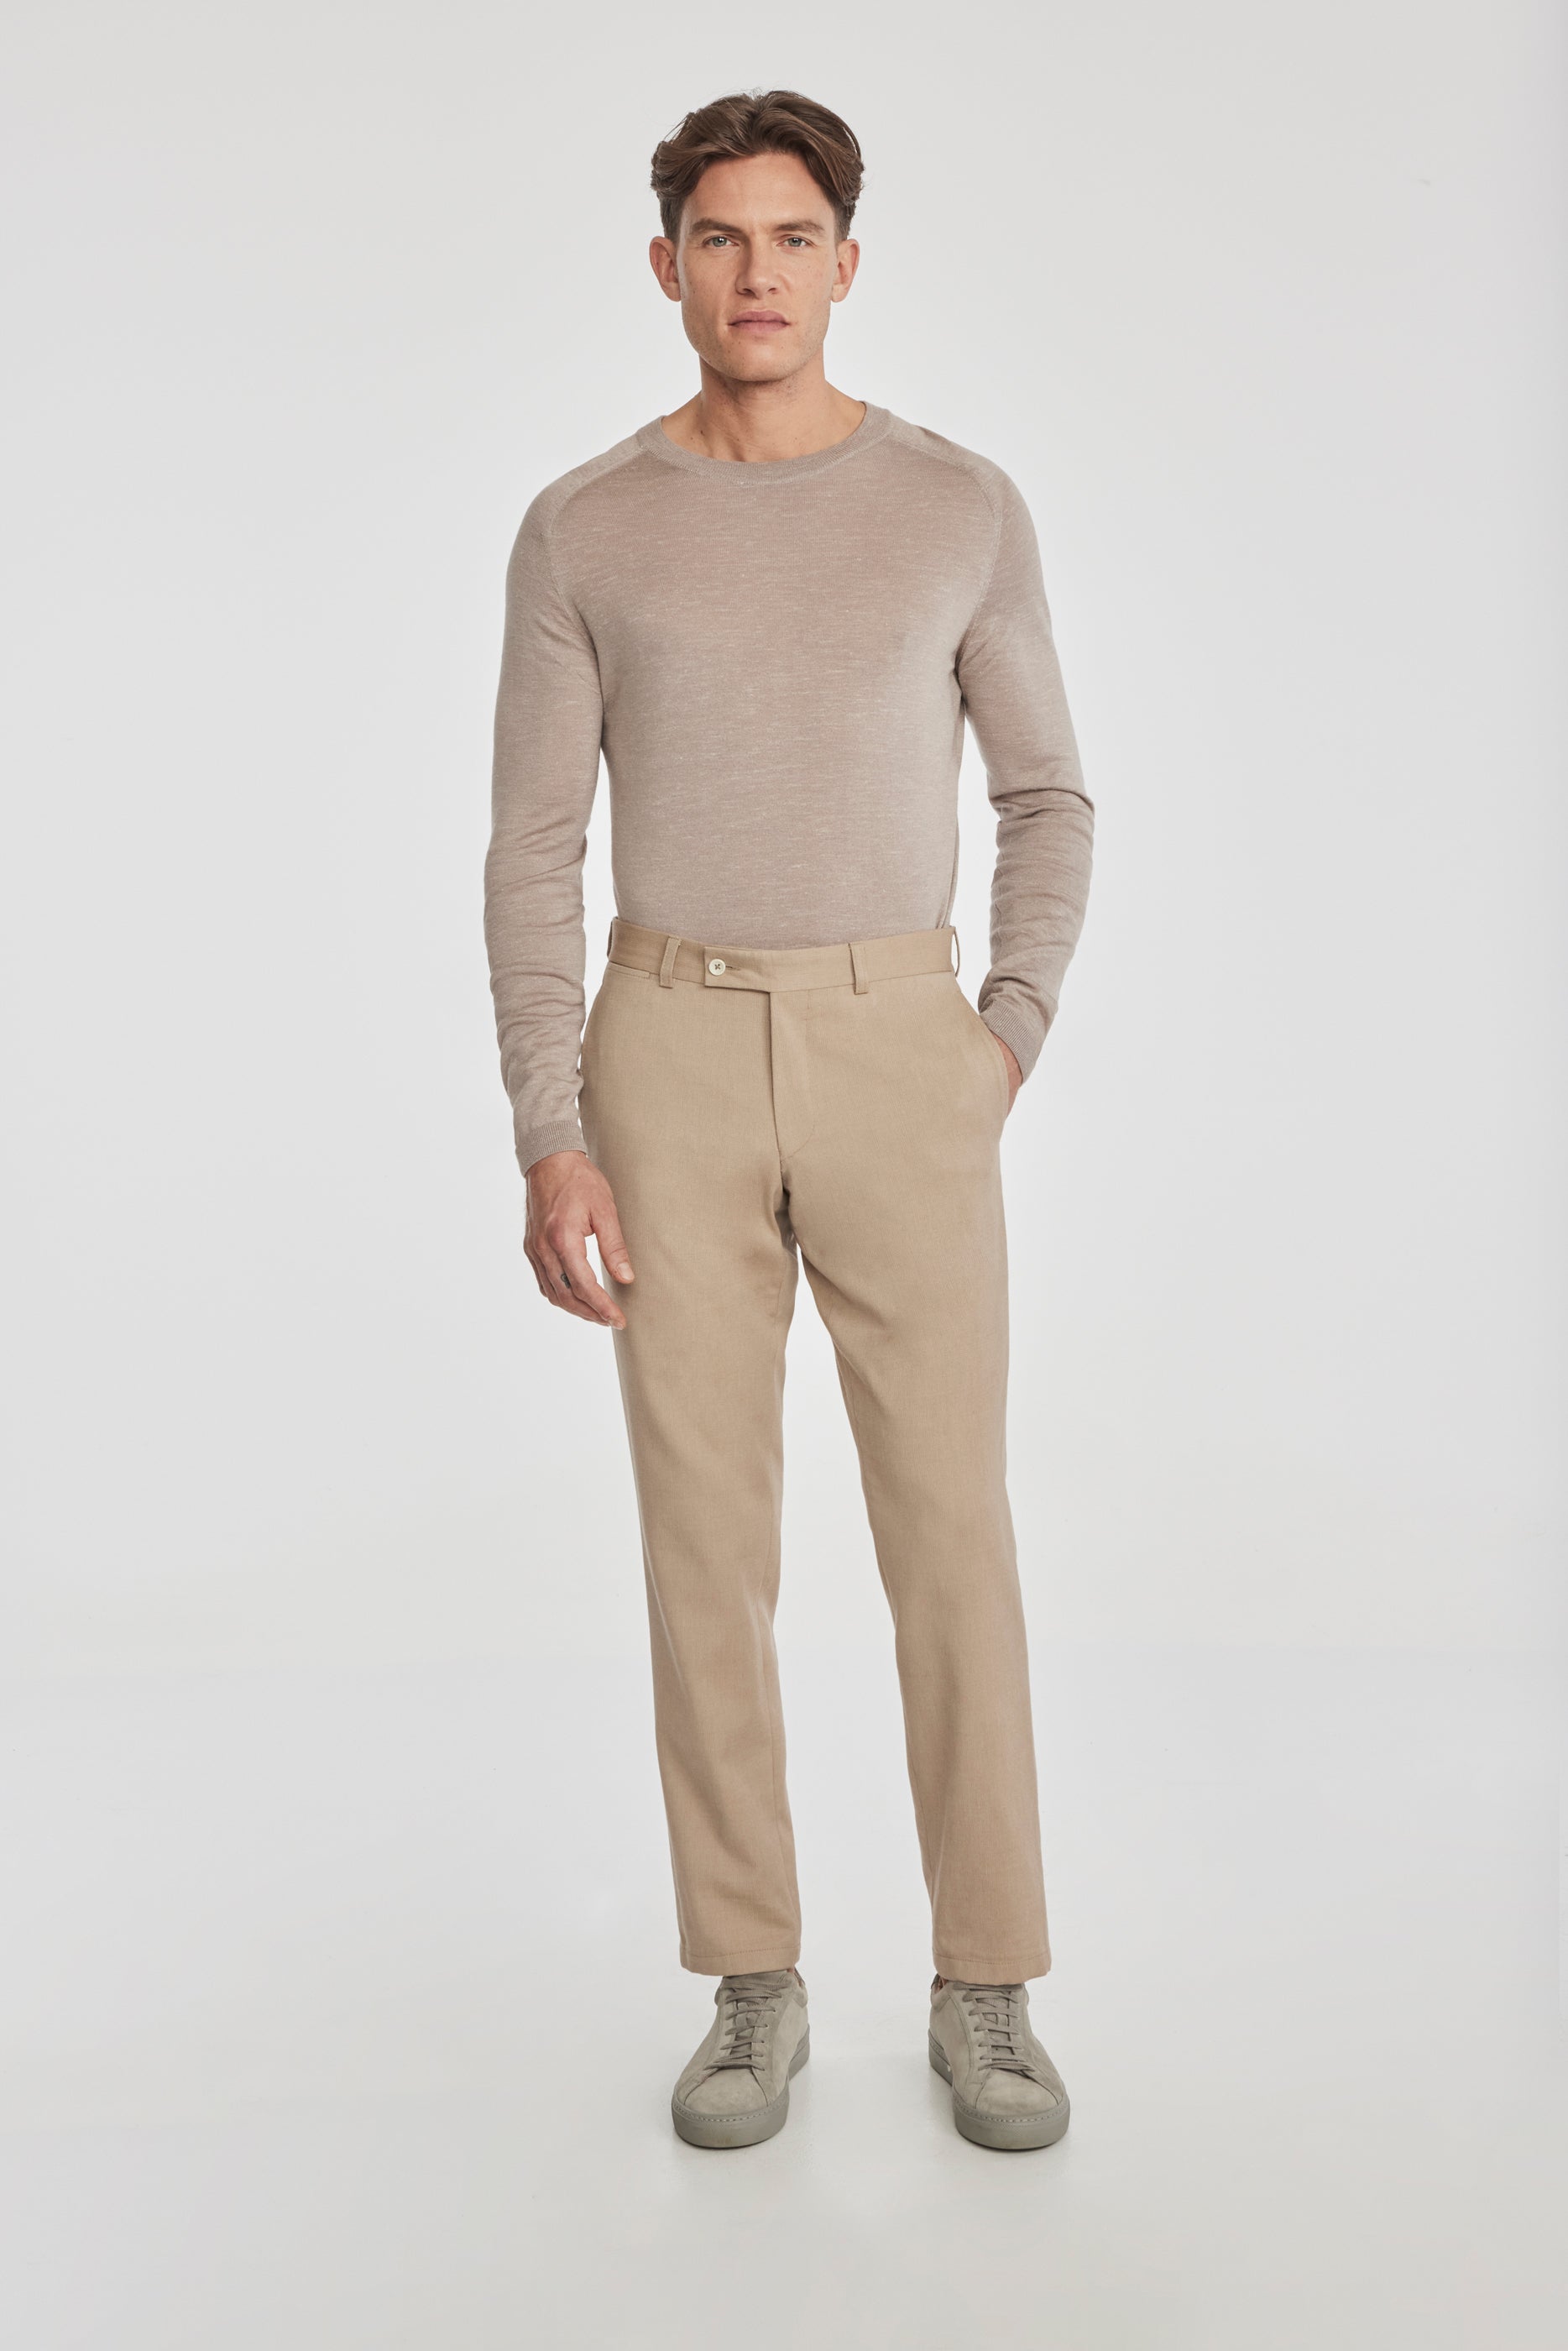 Vue alternative 1 Palmer pantalon en coton texturé et laine extensible, beige